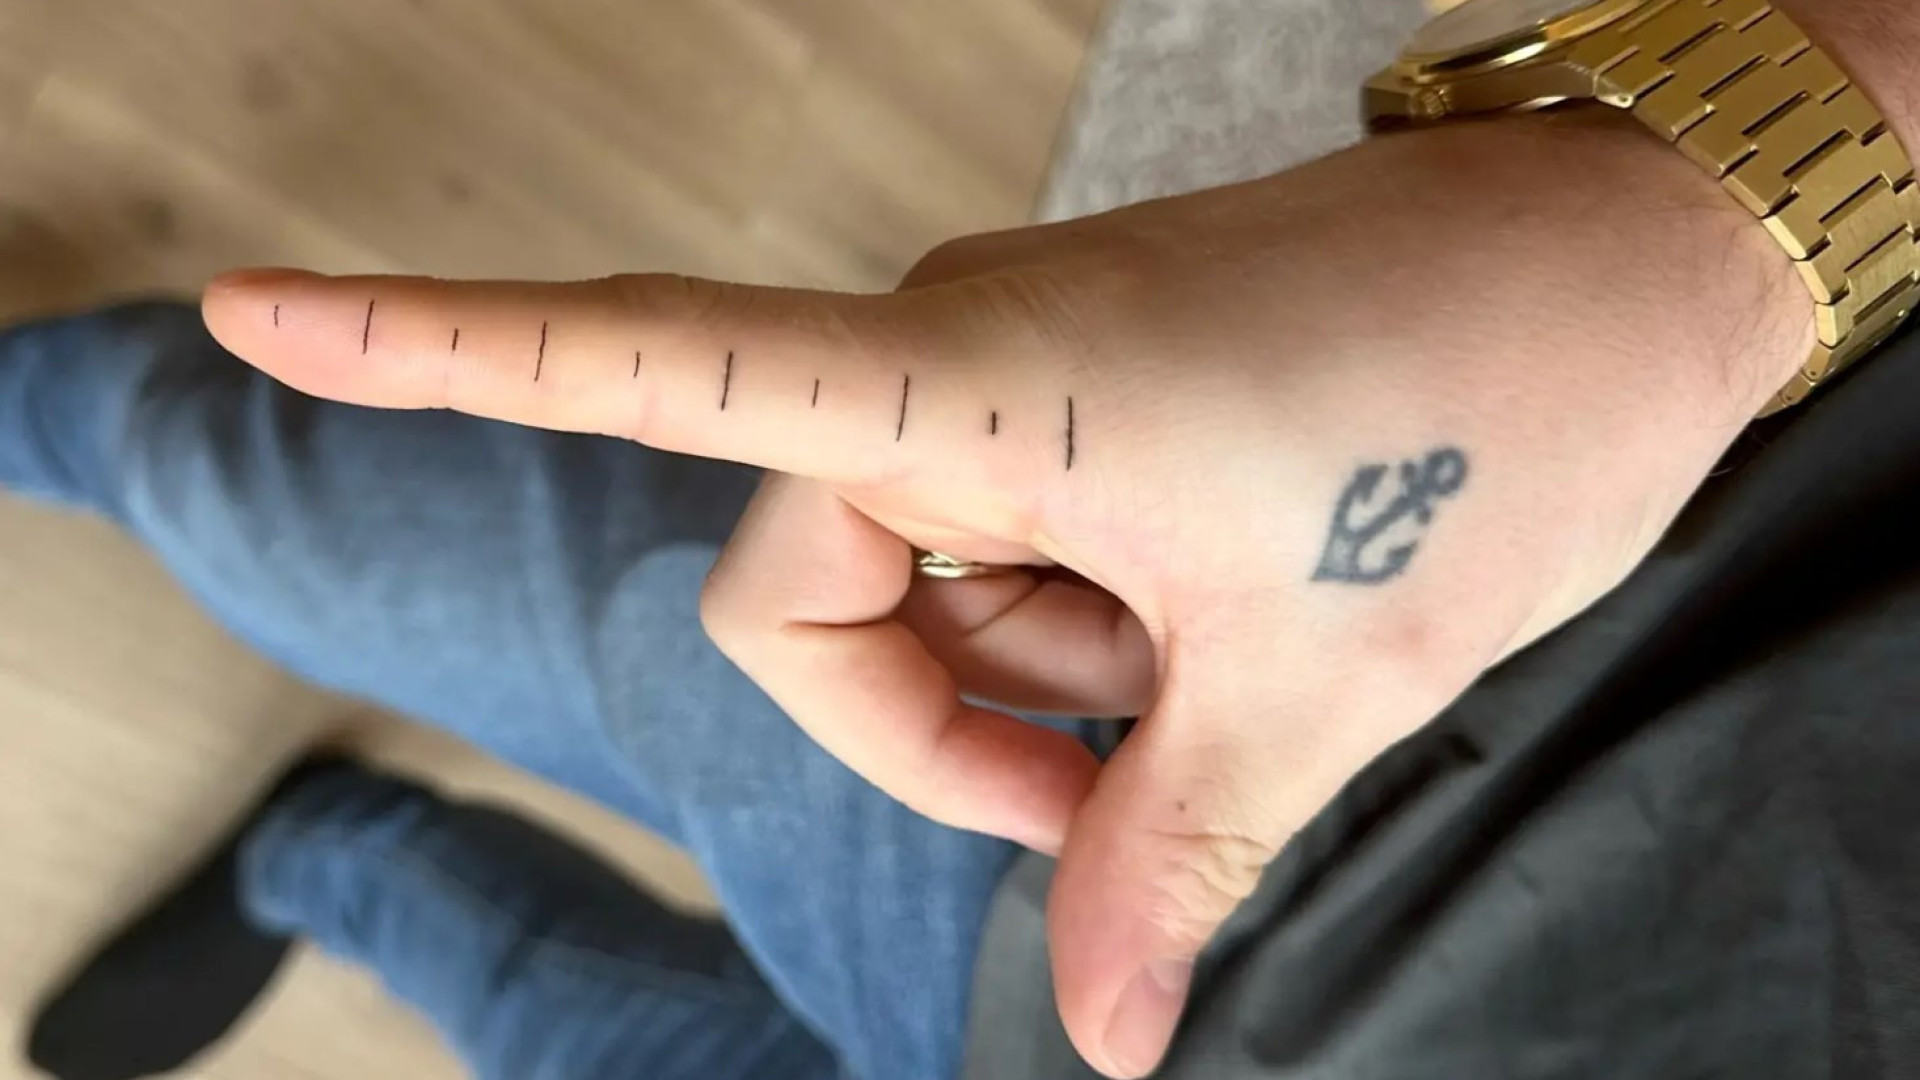  Homem tatua régua no dedo para medir objetos; veja